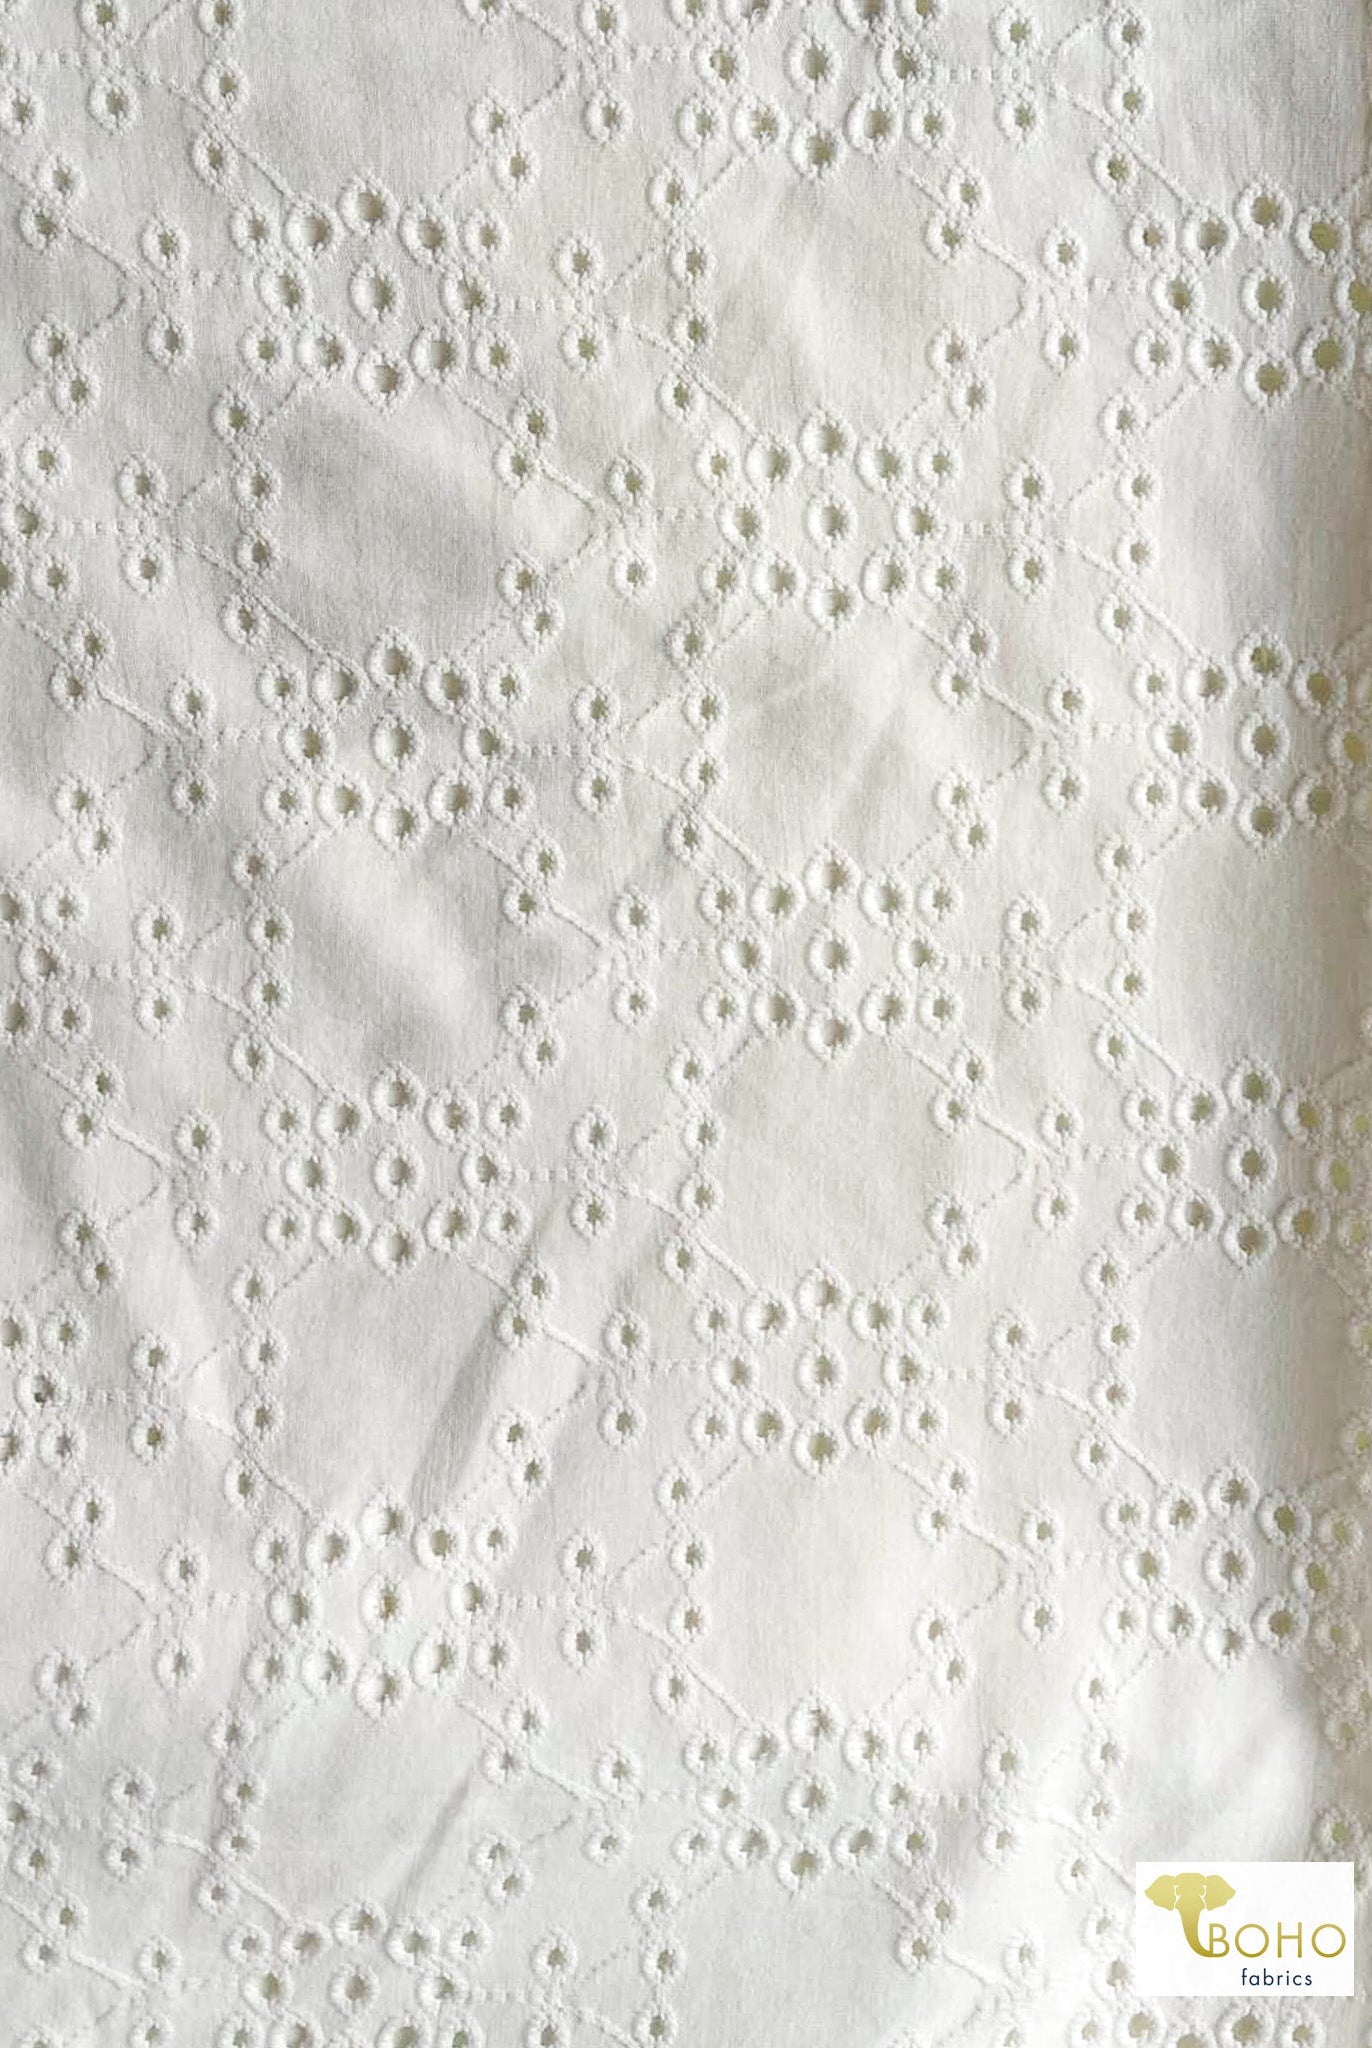 Off-White, Eyelet Knit Fabric - Boho Fabrics - Jacquard Knit Fabric